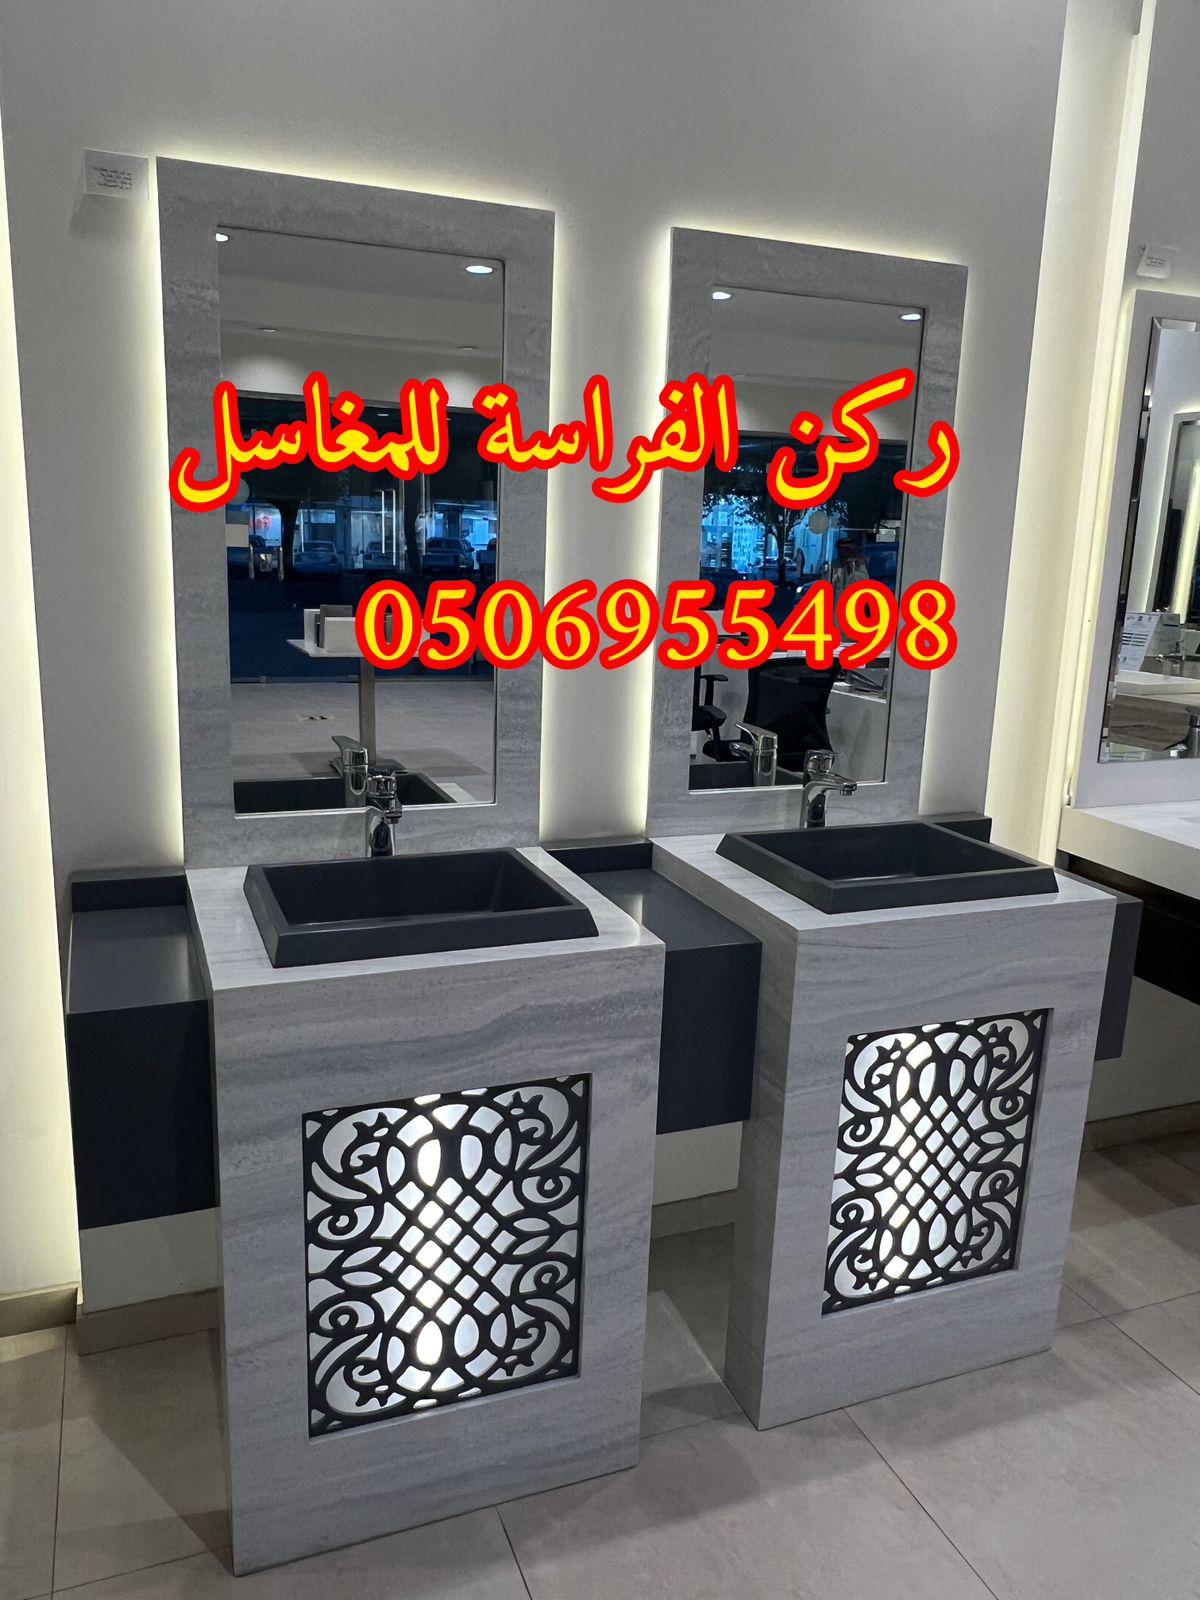 الرياض - تفصيل احواض مغاسل رخام في الرياض,0506955498 313931239